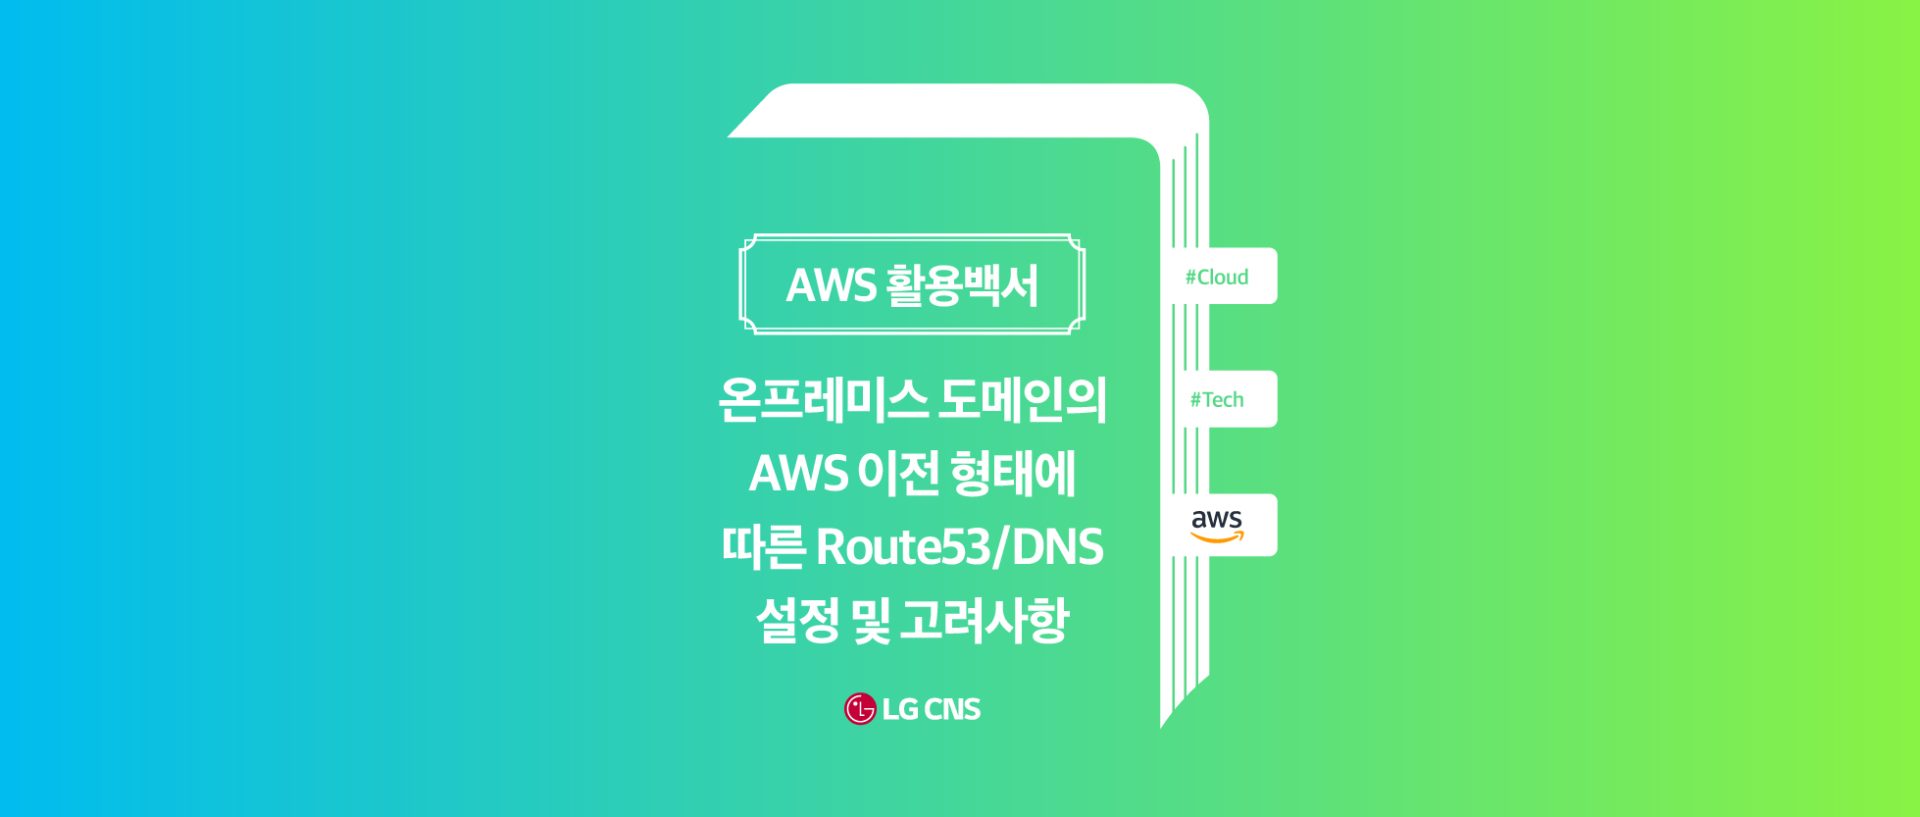 온프레미스 도메인의 Aws 이전 형태에 따른 Route53/Dns 설정 및 고려 사항 – Lg Cns 블로그